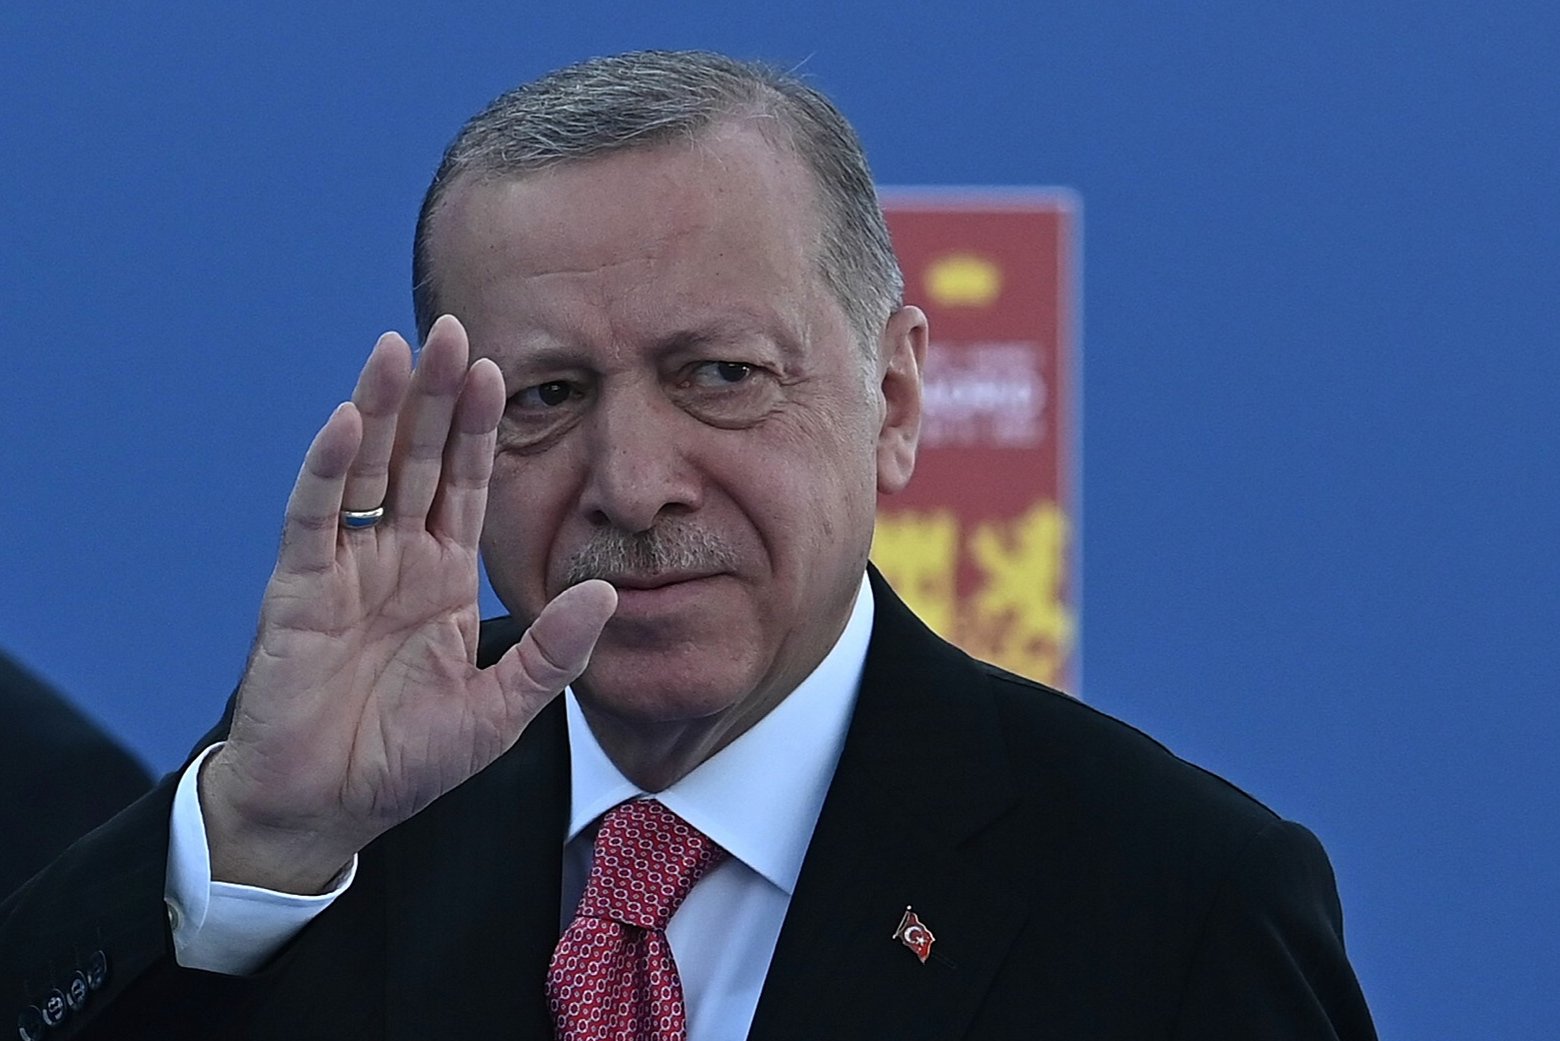 Les condicions de Turquia per aixecar el veto a Suècia i Finlàndia per entrar a l'OTAN